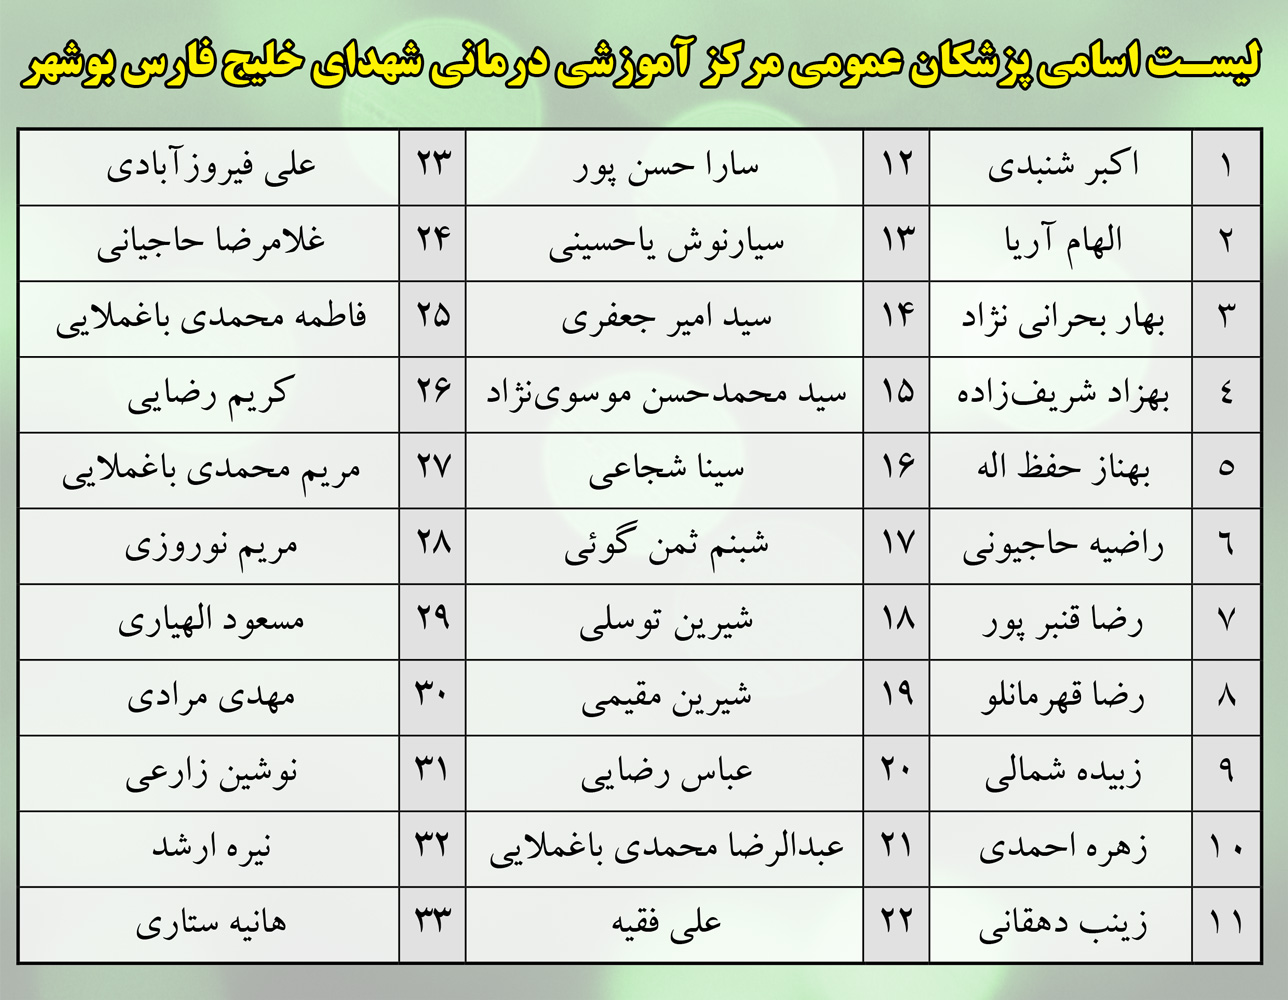 لیست پزشکان متخصص استان بوشهر
